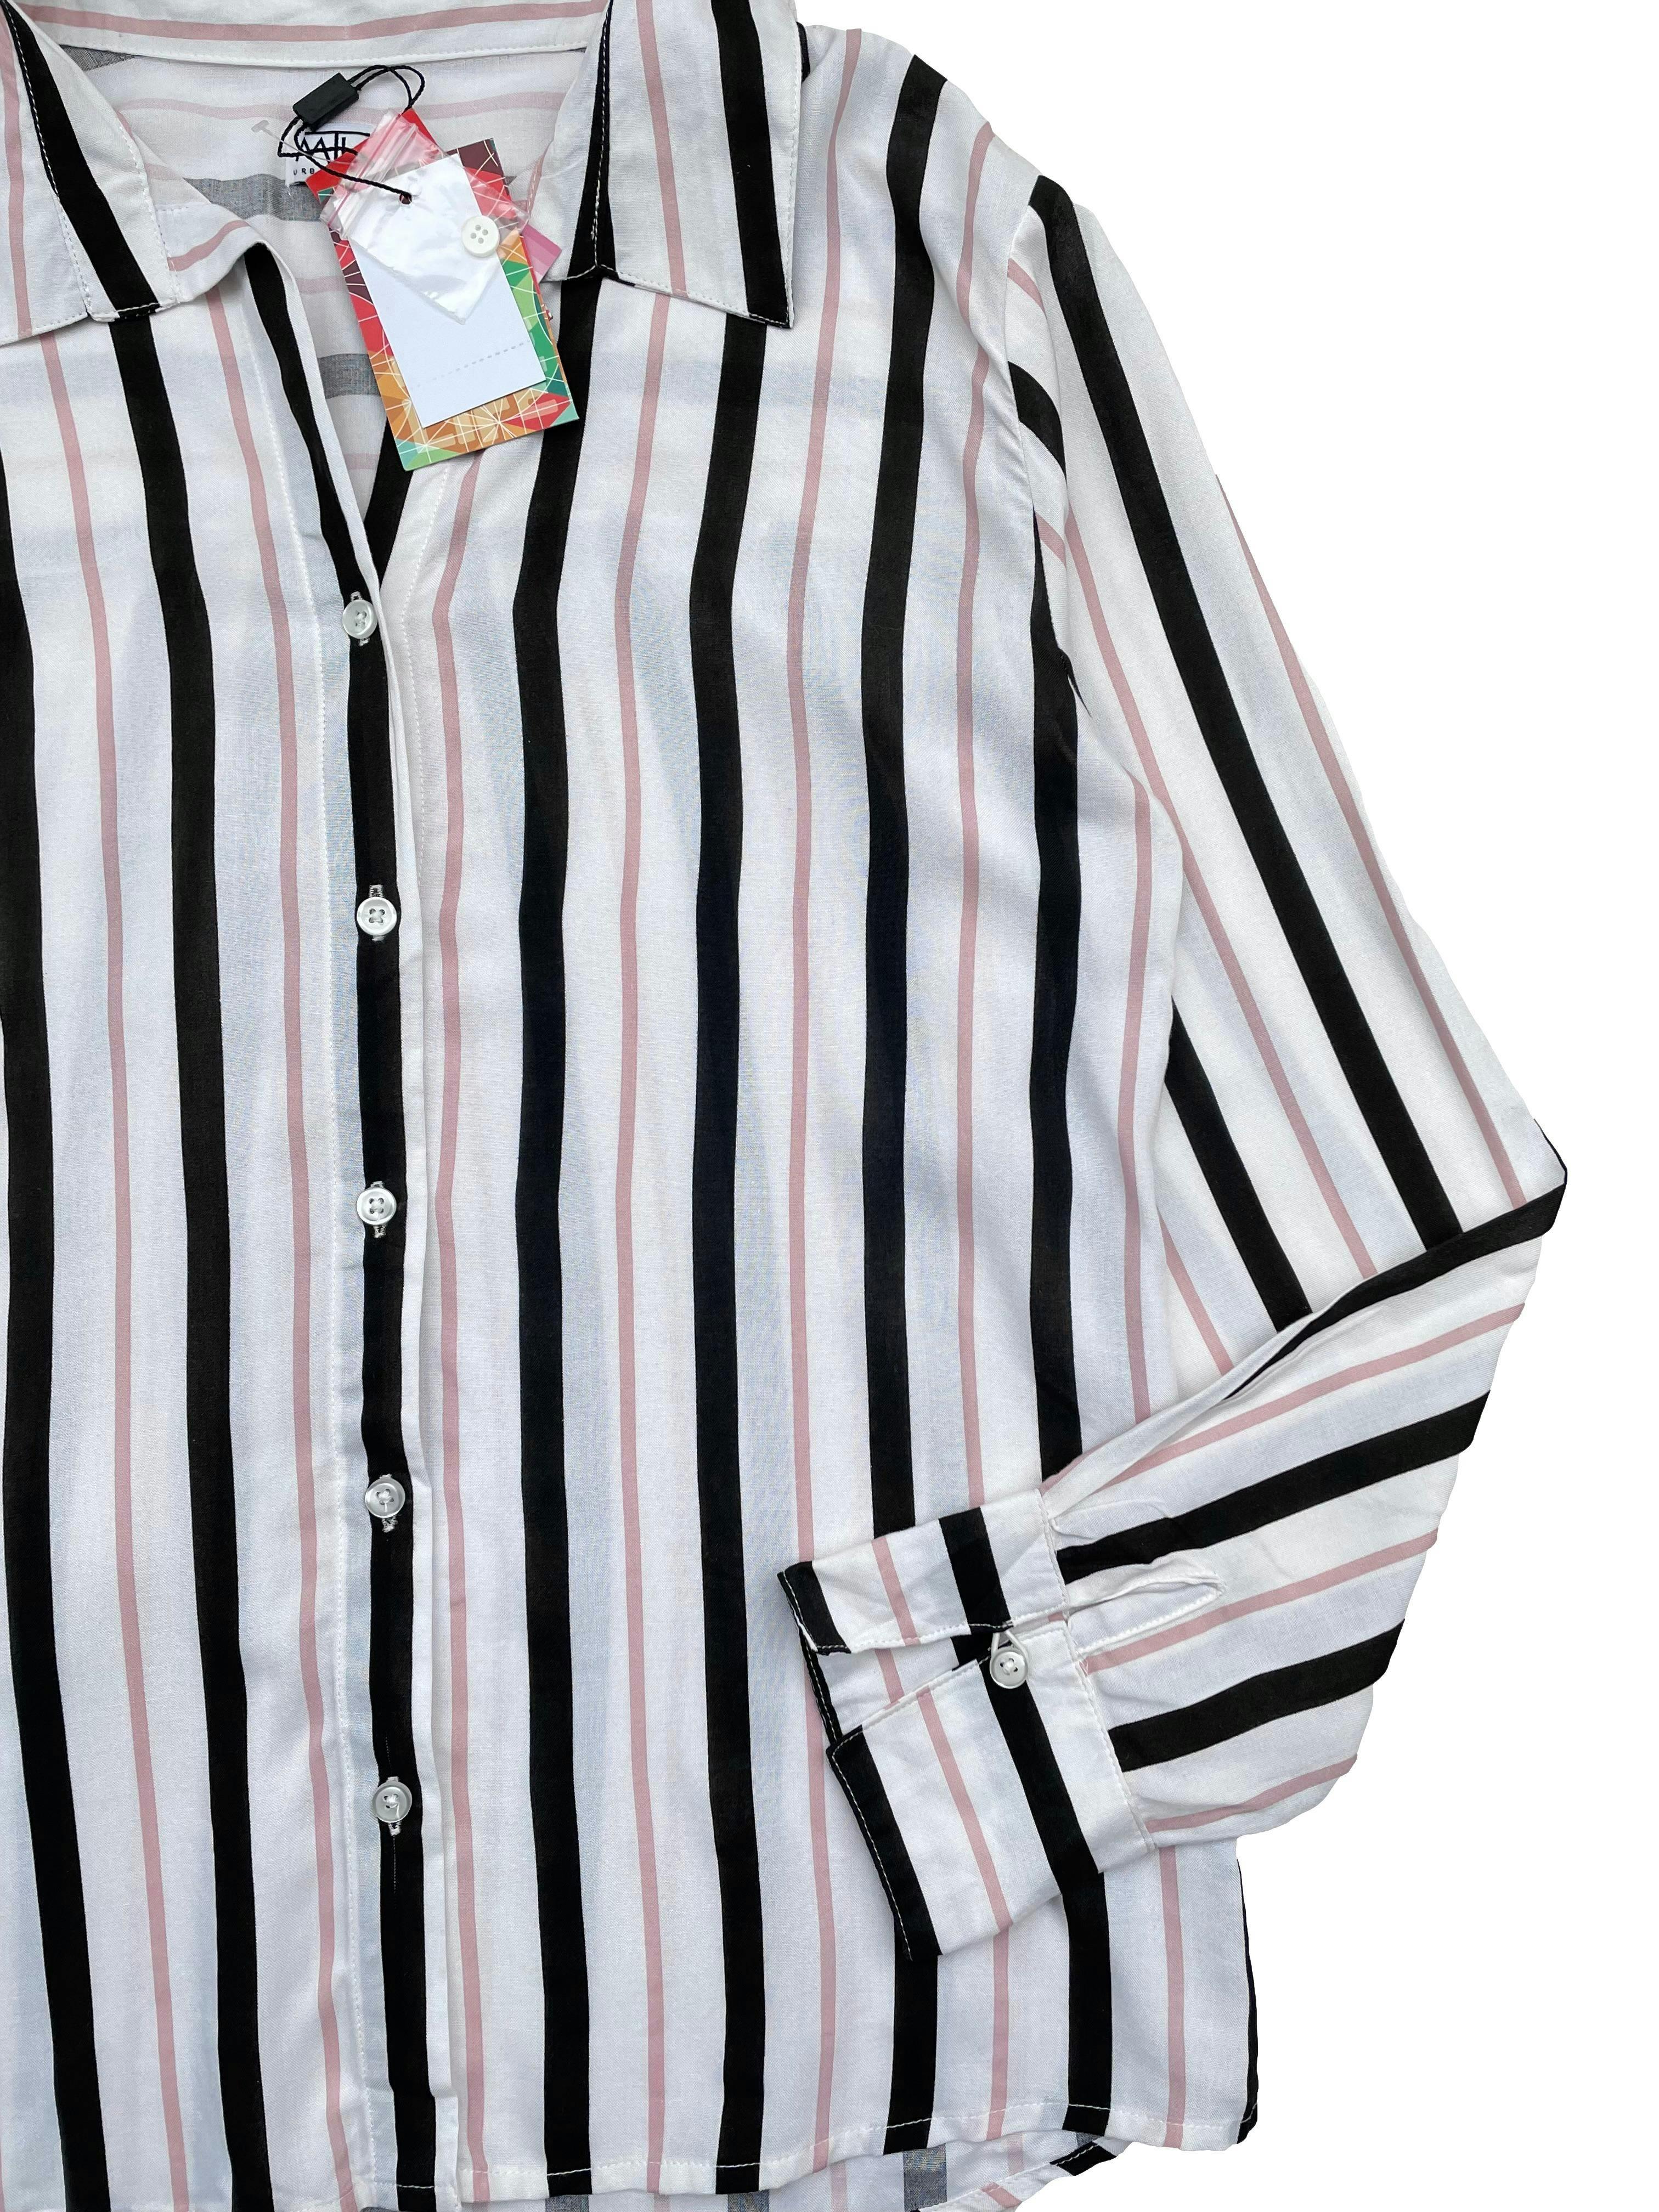 Camisa blanca a rayas negras y palo rosa, tela fresca, tiene botón de repuesto. Nueva con etiqueta. Busto 110cm, Largo 72cm. 